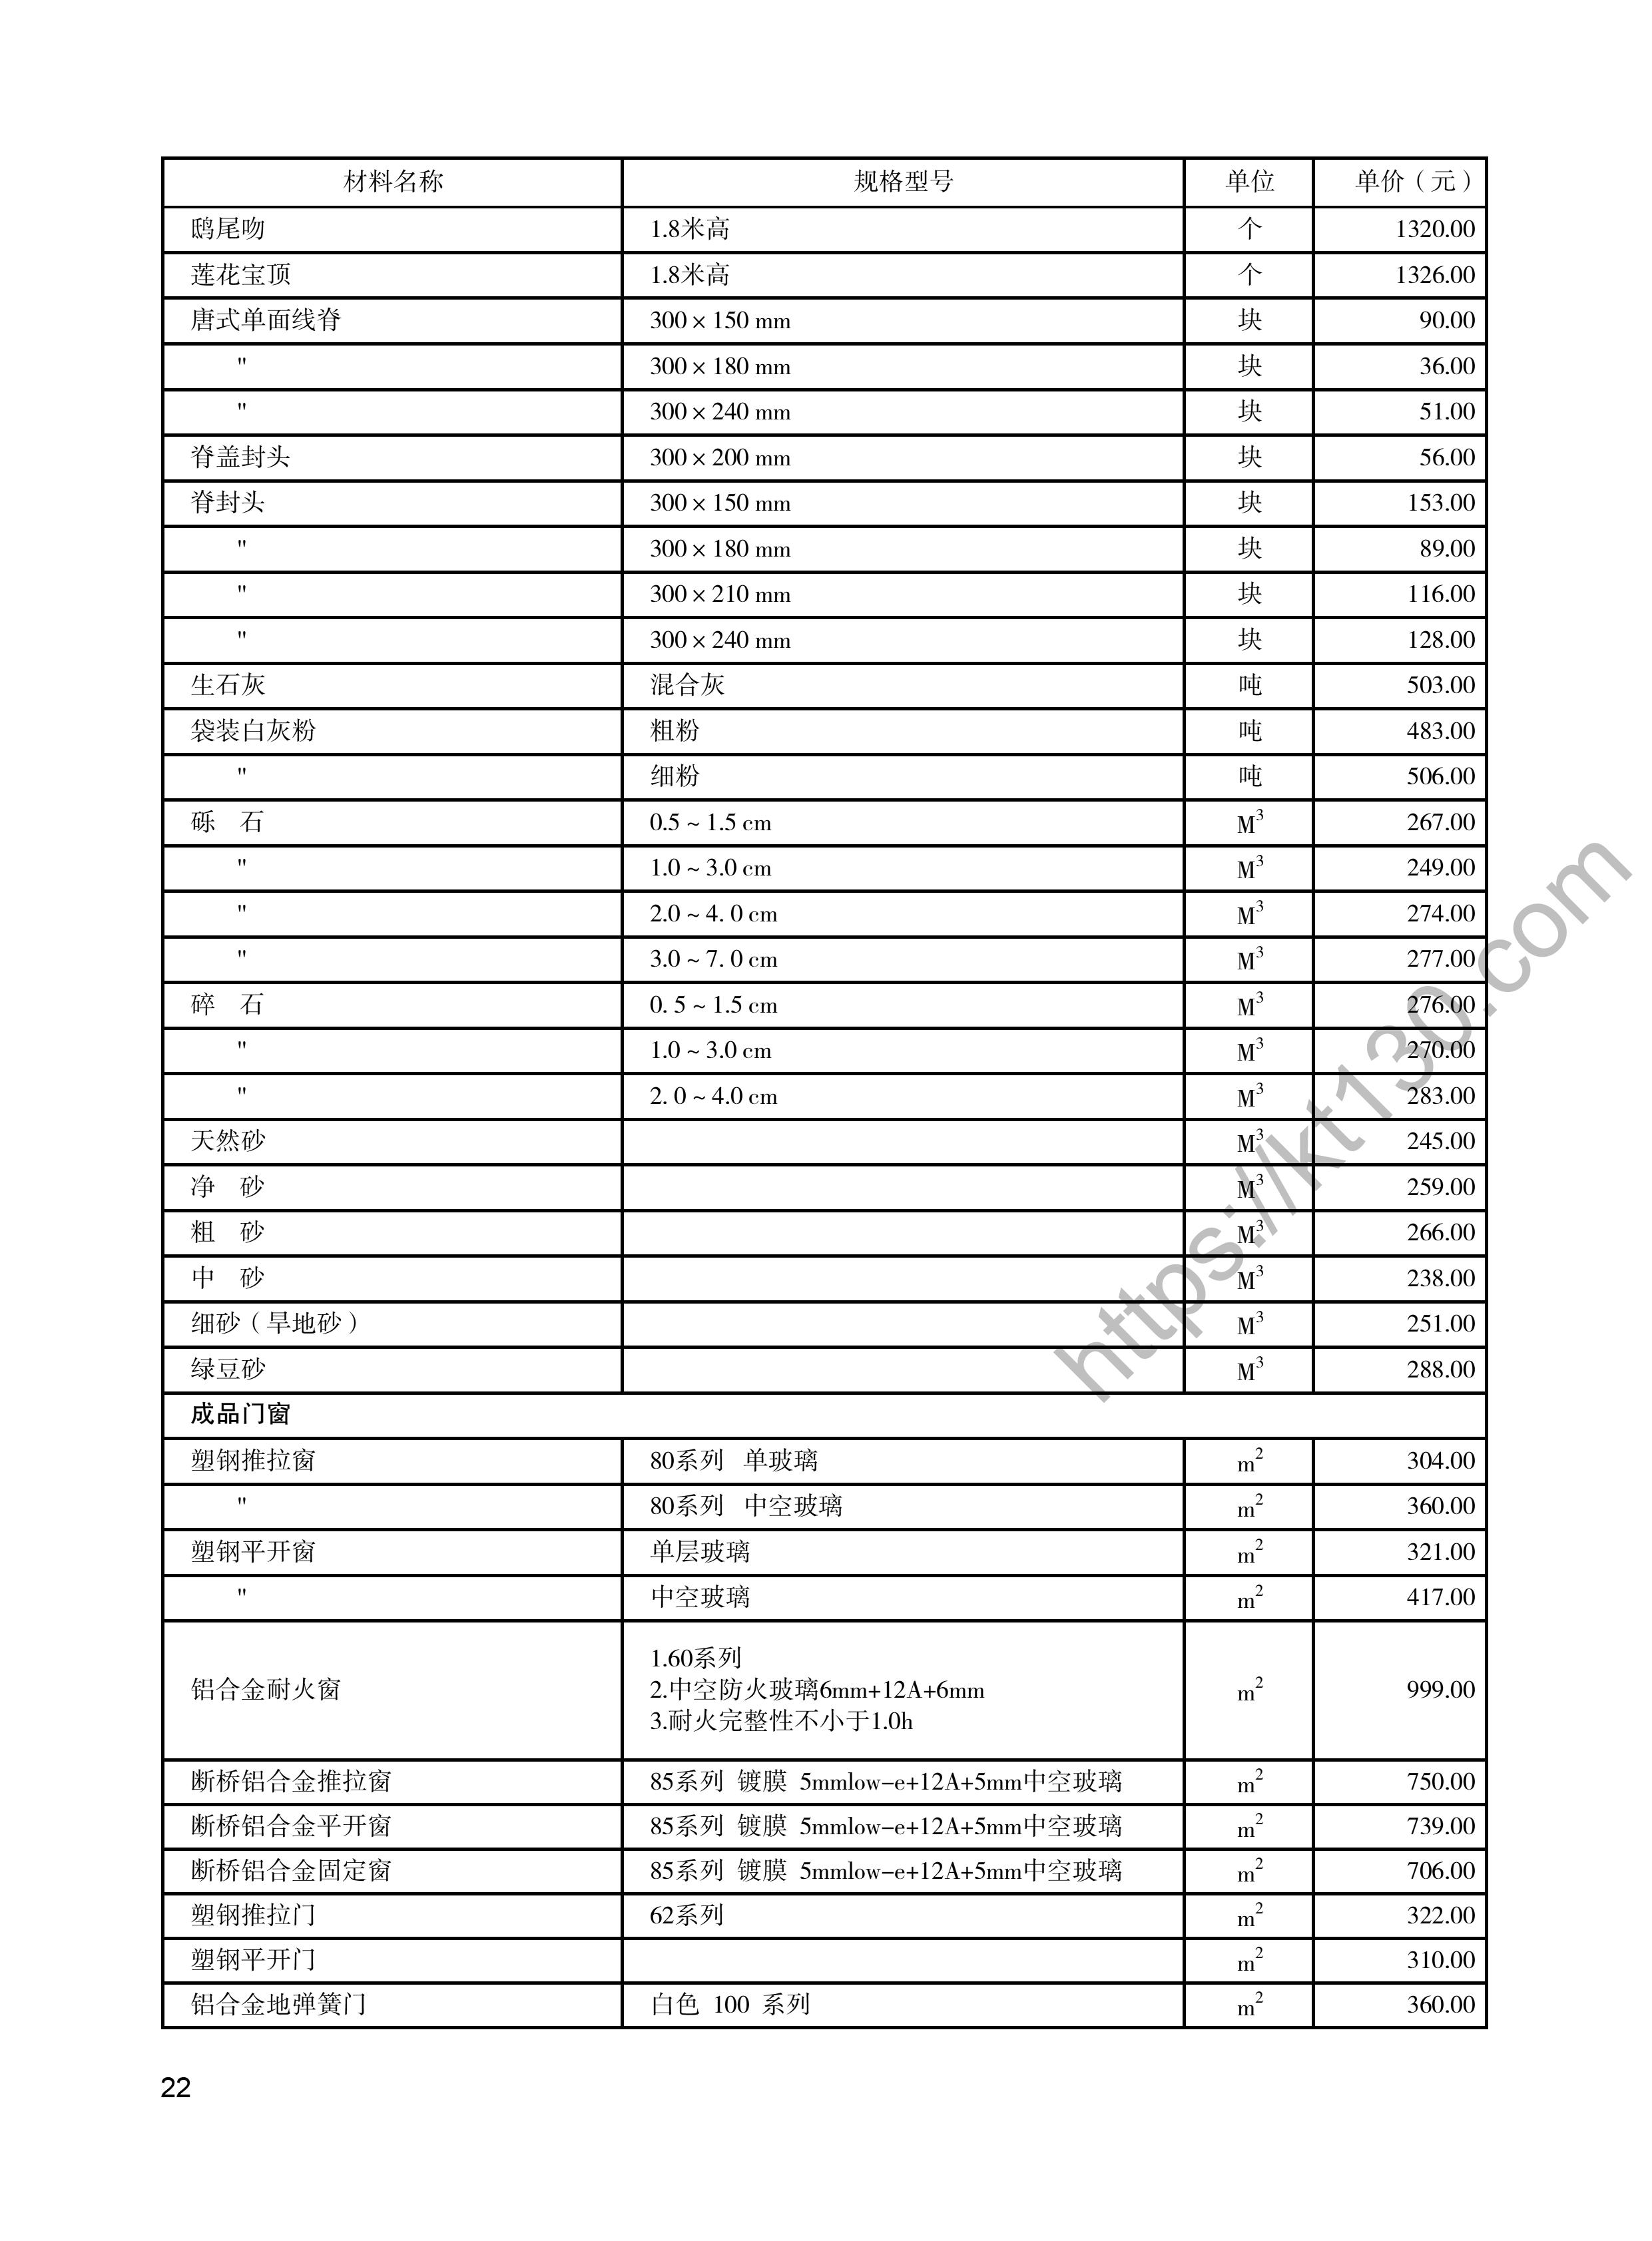 陕西省2022年5月建筑材料价_成品门窗_48239